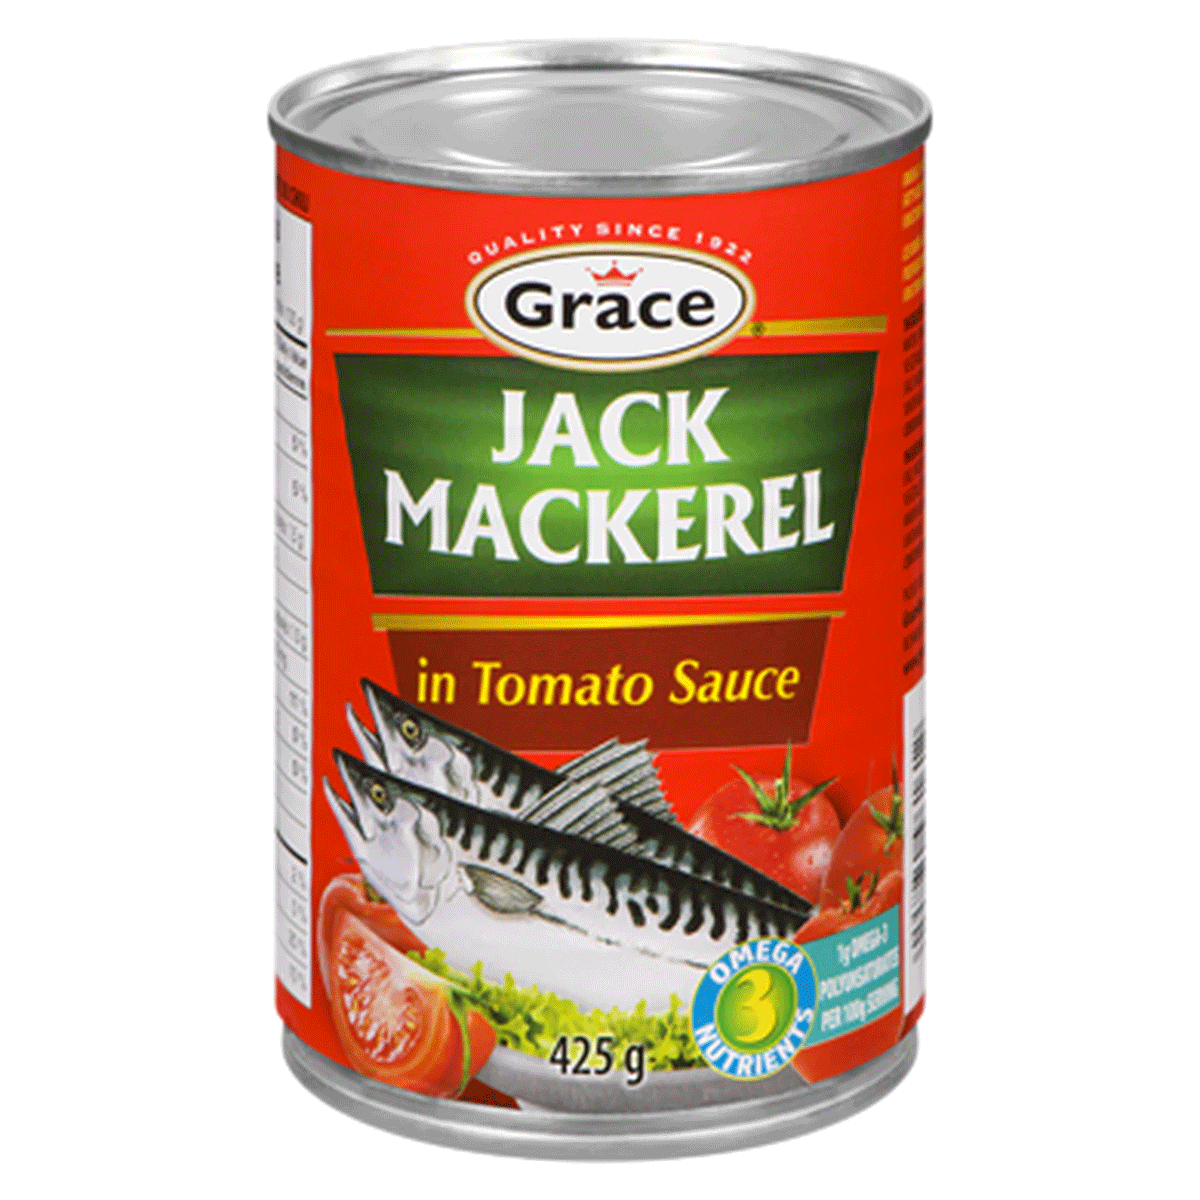 Grace Jack Mackerel